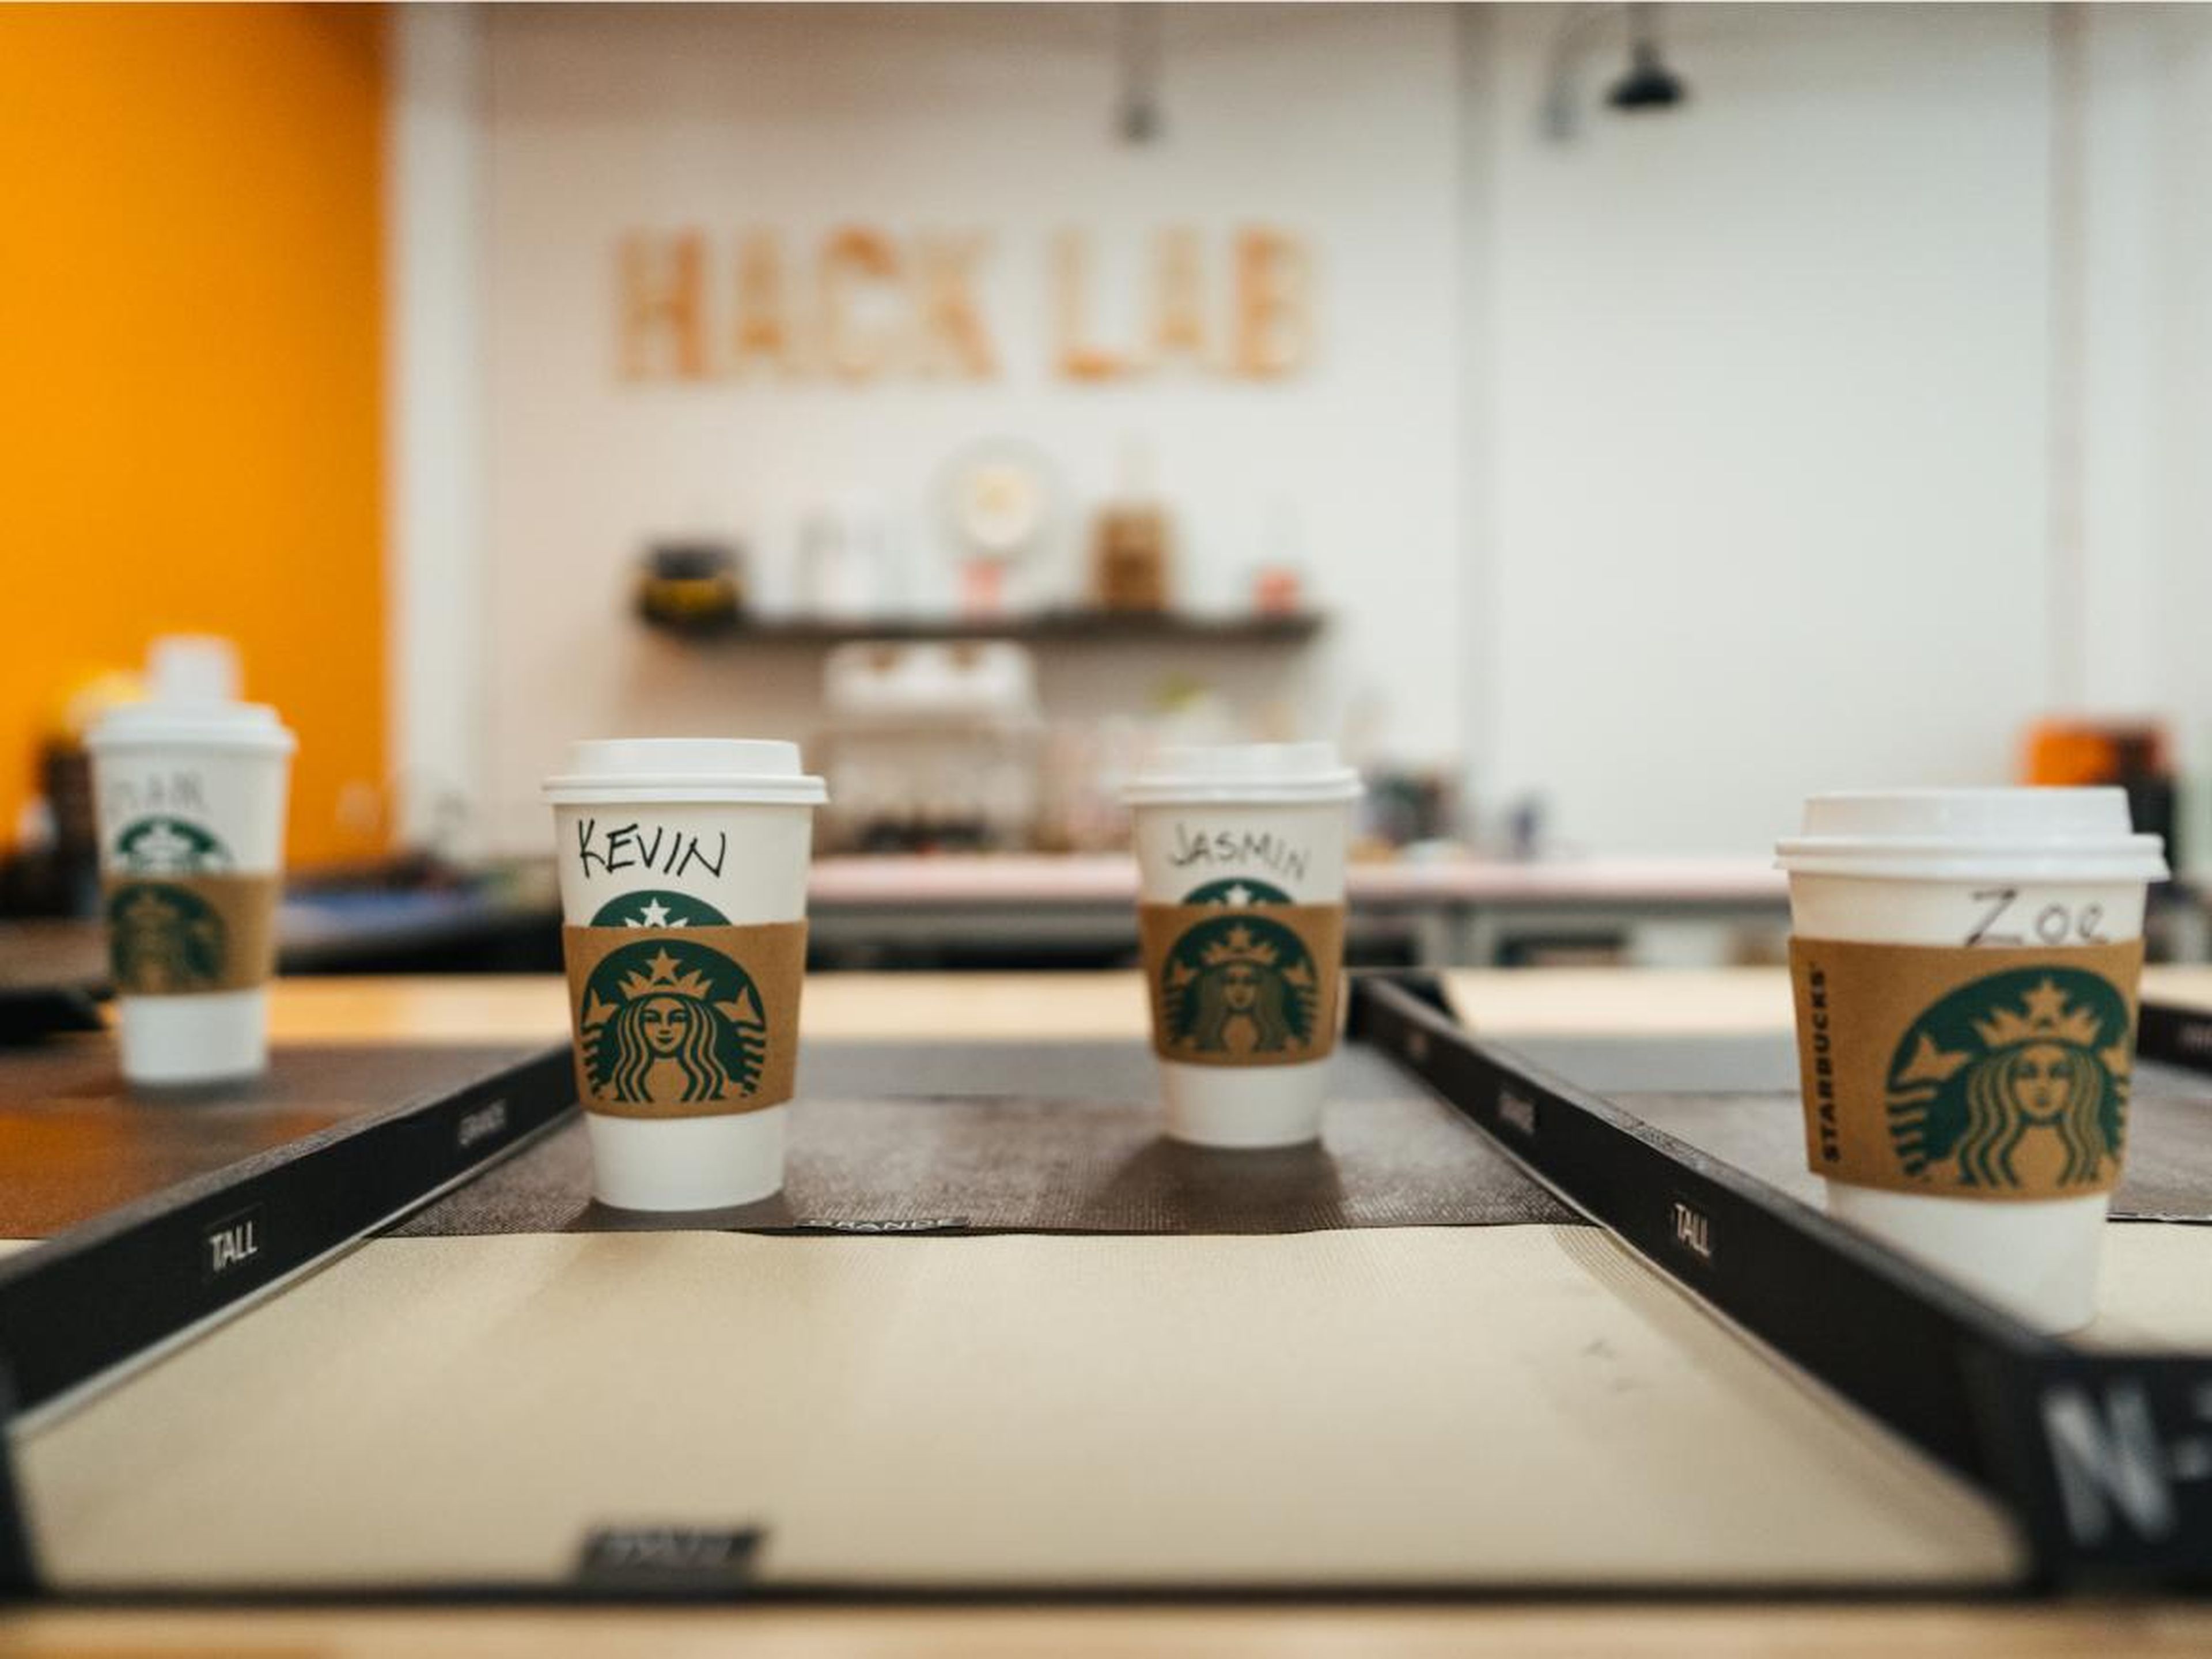 Los empleados de Starbucks fuera de Seattle pueden votar por los proyectos que les gusten y compartir sus propias ideas a través de Springboard, un sitio web interno de la compañía para fomentar la innovación.